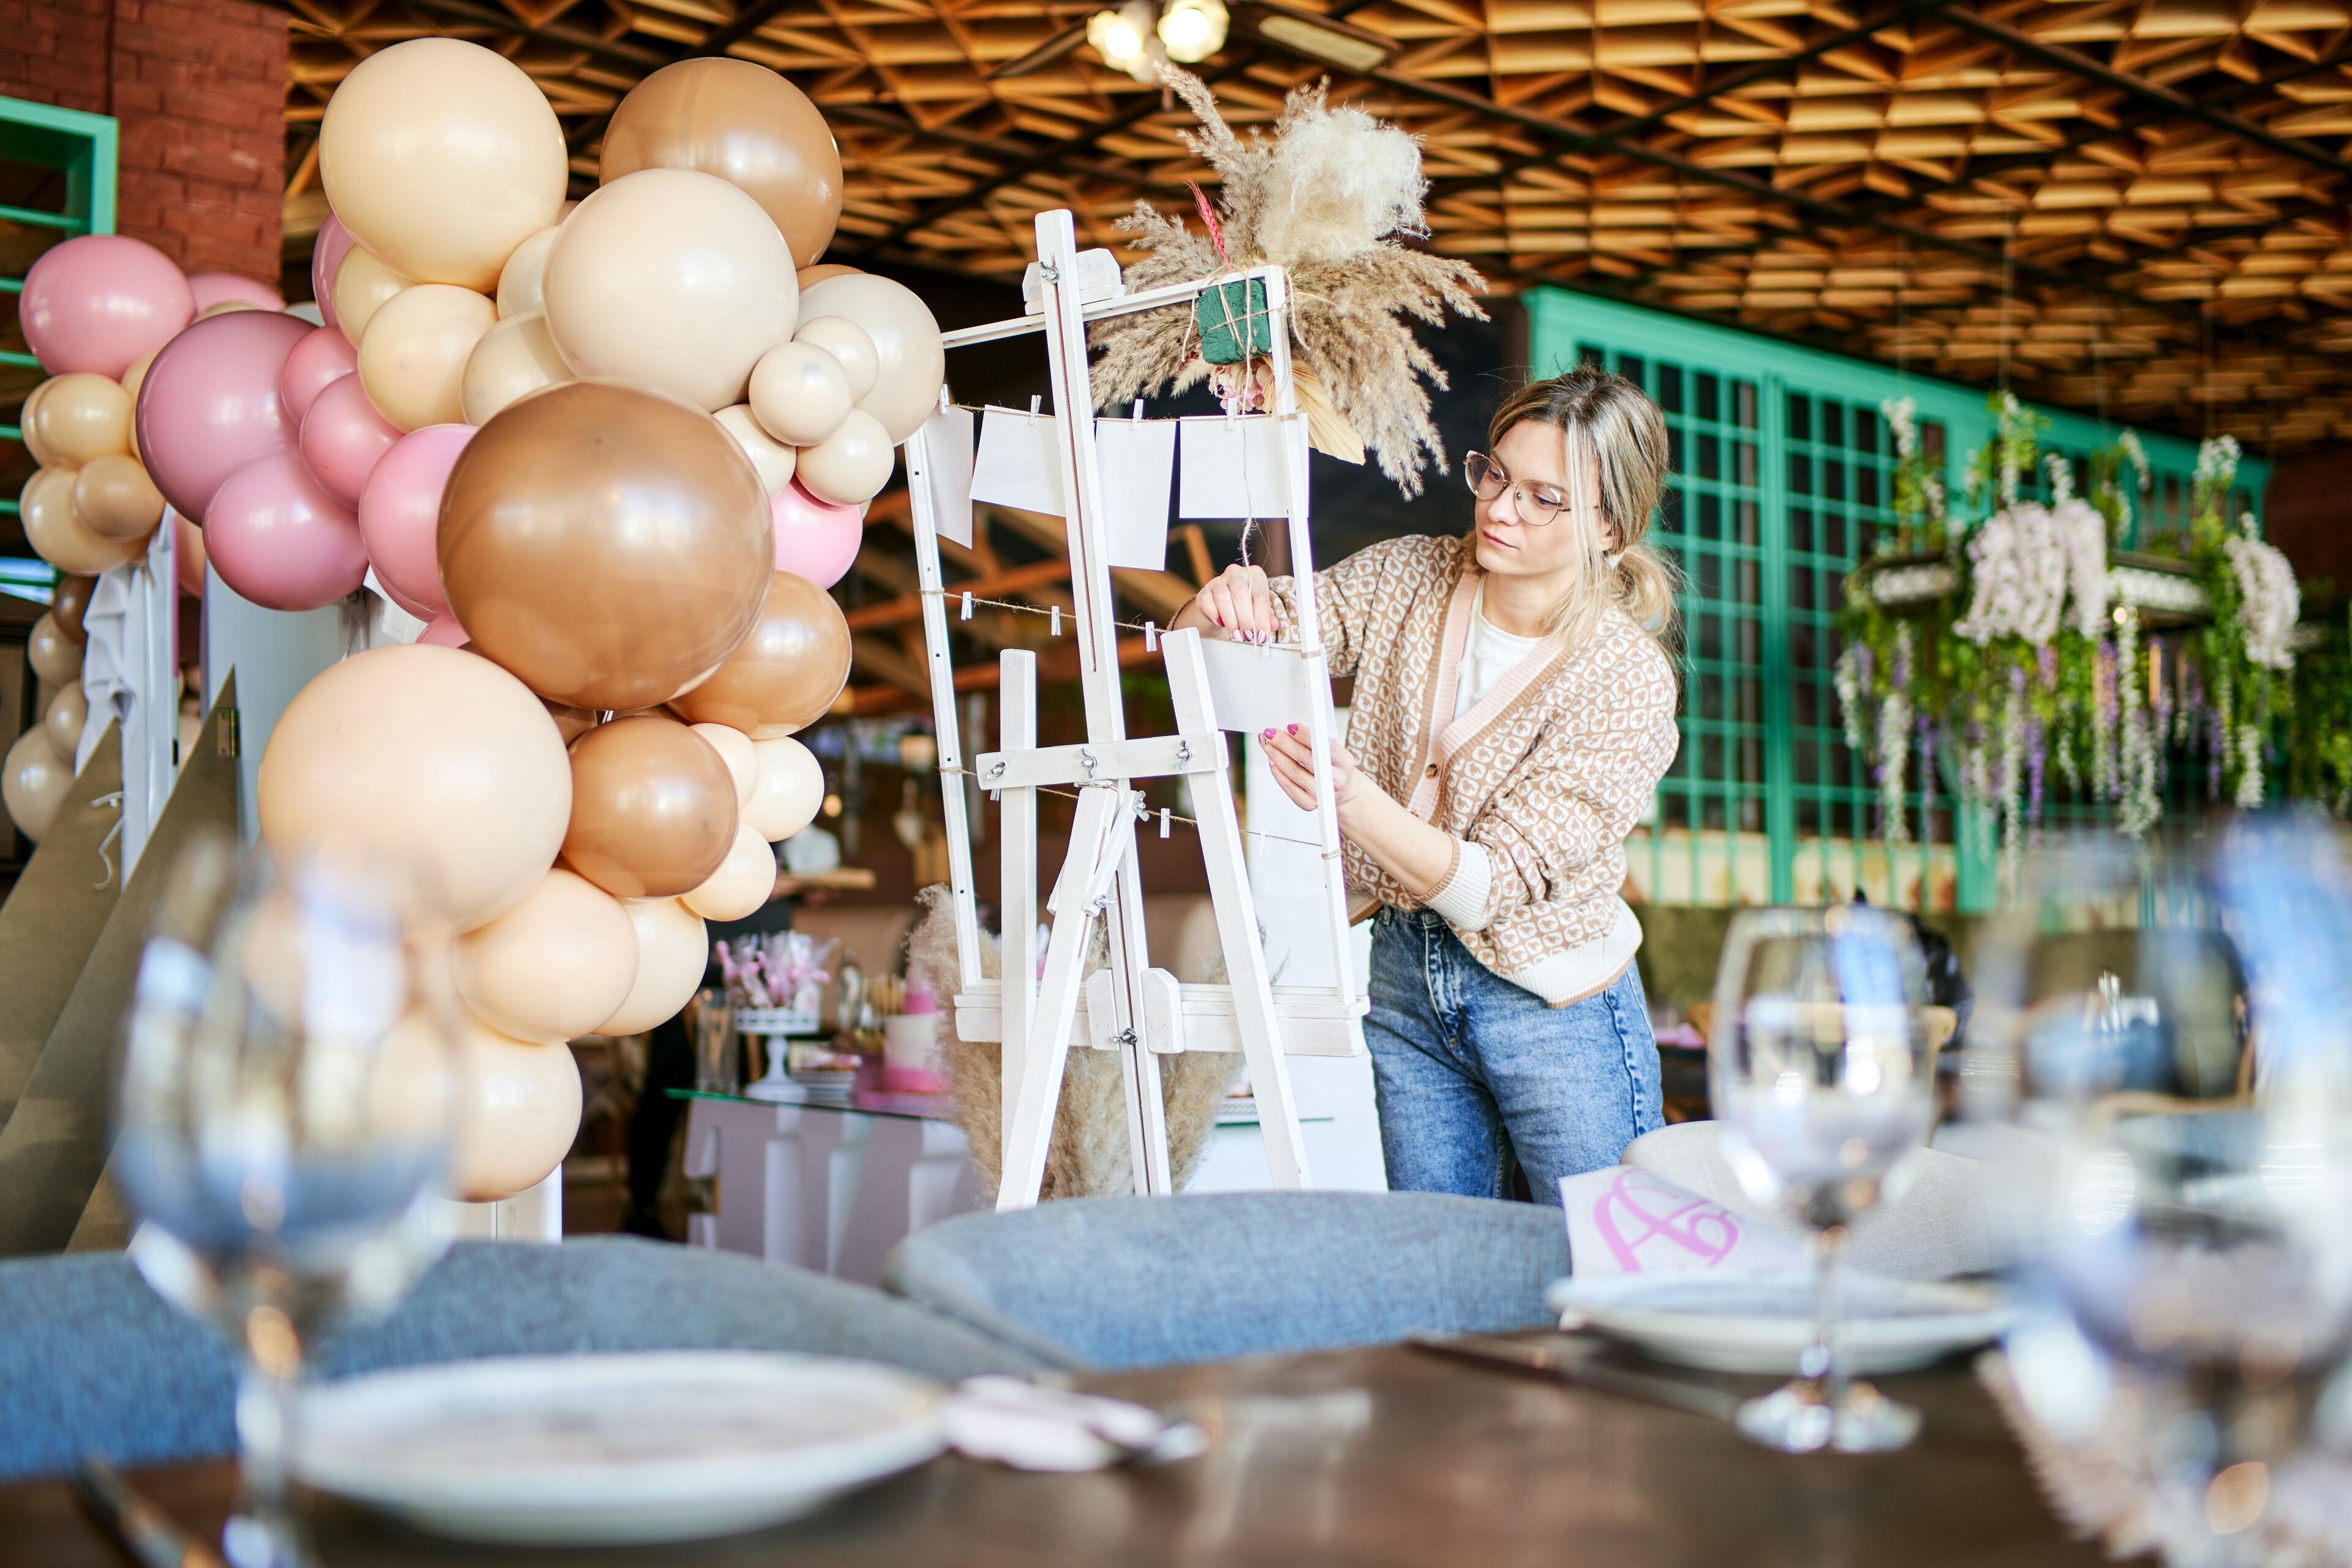 Una organizadora de eventos atenta ajusta decoraciones en un caballete blanco en medio de un ambiente festivo con globos y mesas elegantemente puestas.